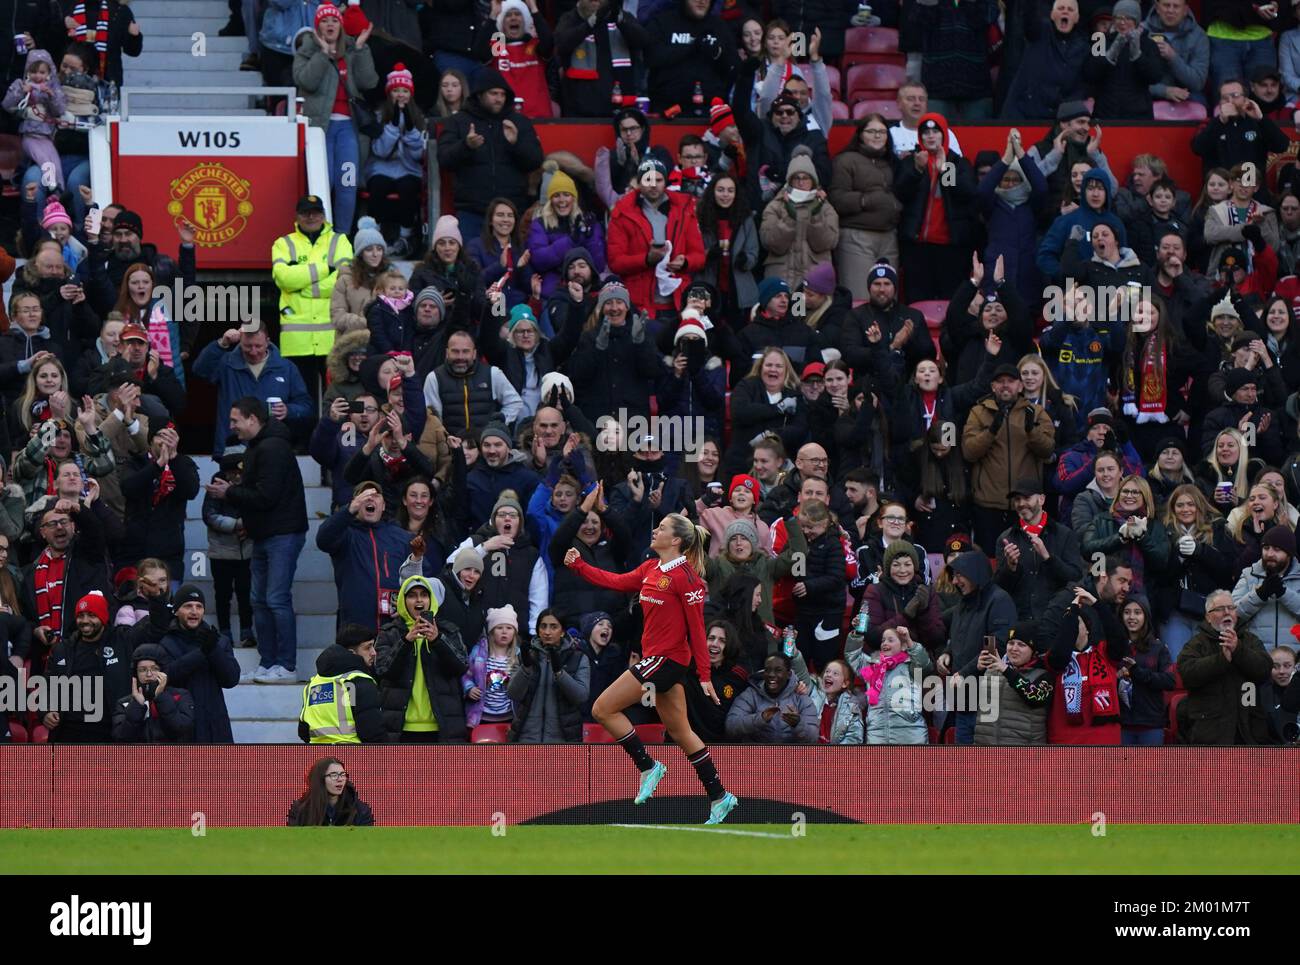 Alessia Russo, del Manchester United, celebra el tercer gol de su equipo durante el partido de la Superliga Femenina Barclays en Old Trafford, Manchester. Fecha de la foto: Sábado 3 de diciembre de 2022. Foto de stock